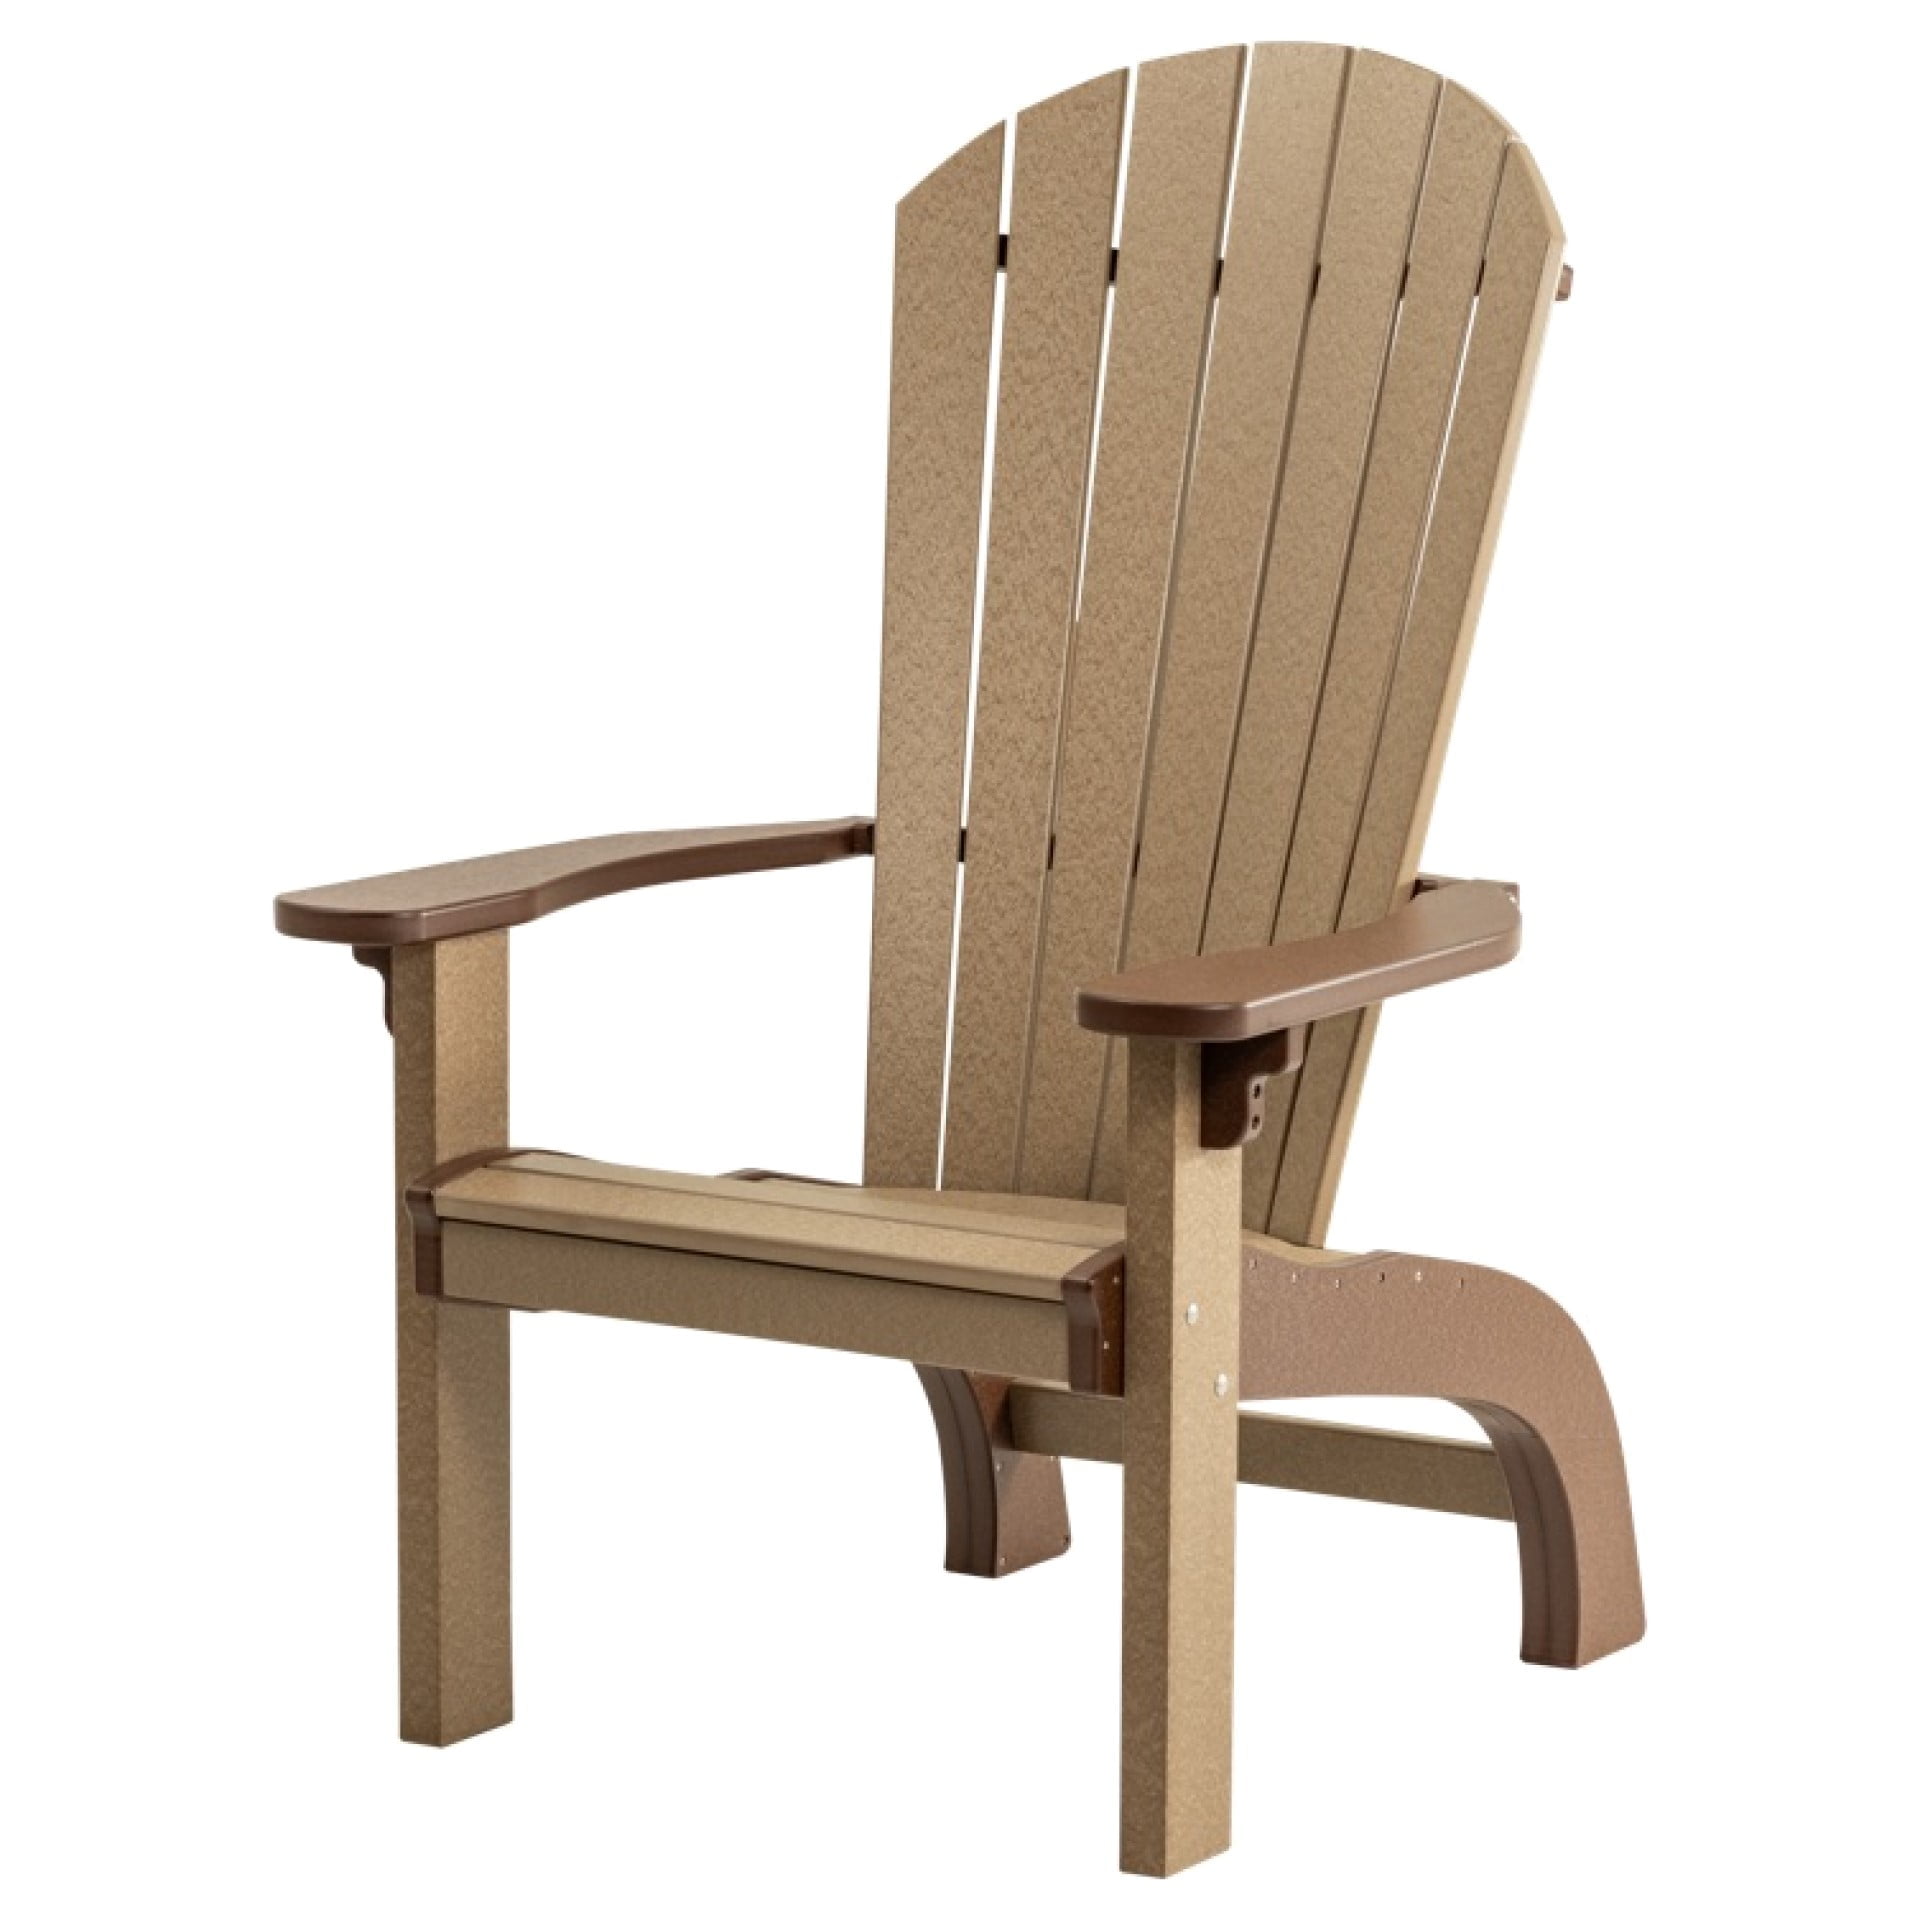 Finch SeaAira Perch Adirondack Chair